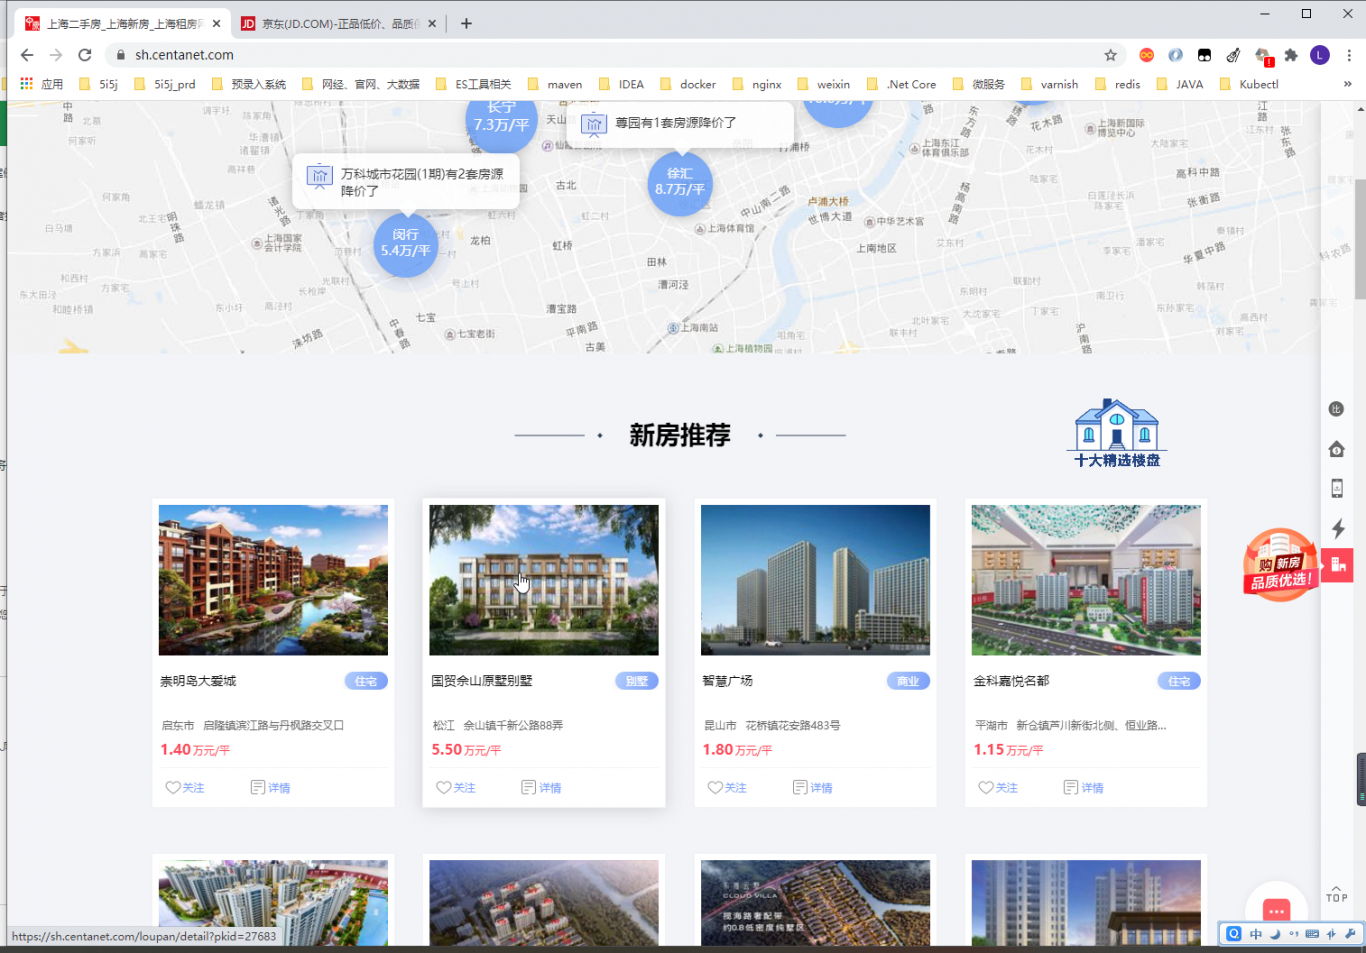 上海中原地产官网系统